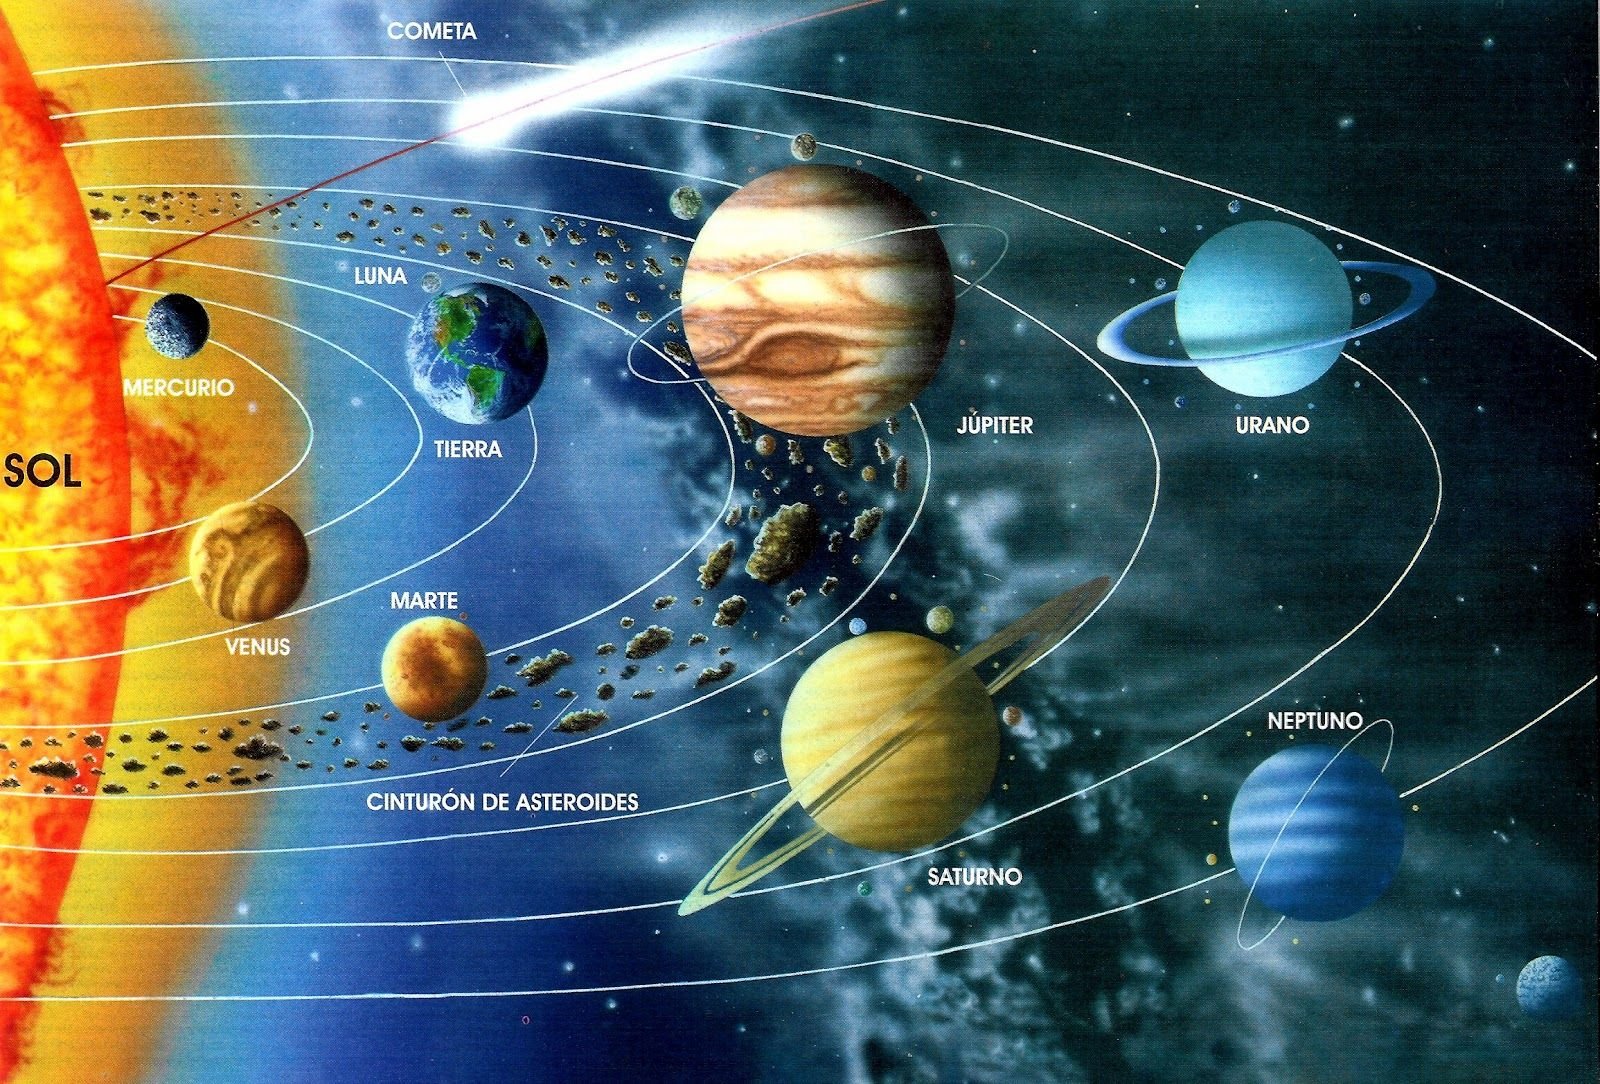 Сколько планет в солнечной системе фото